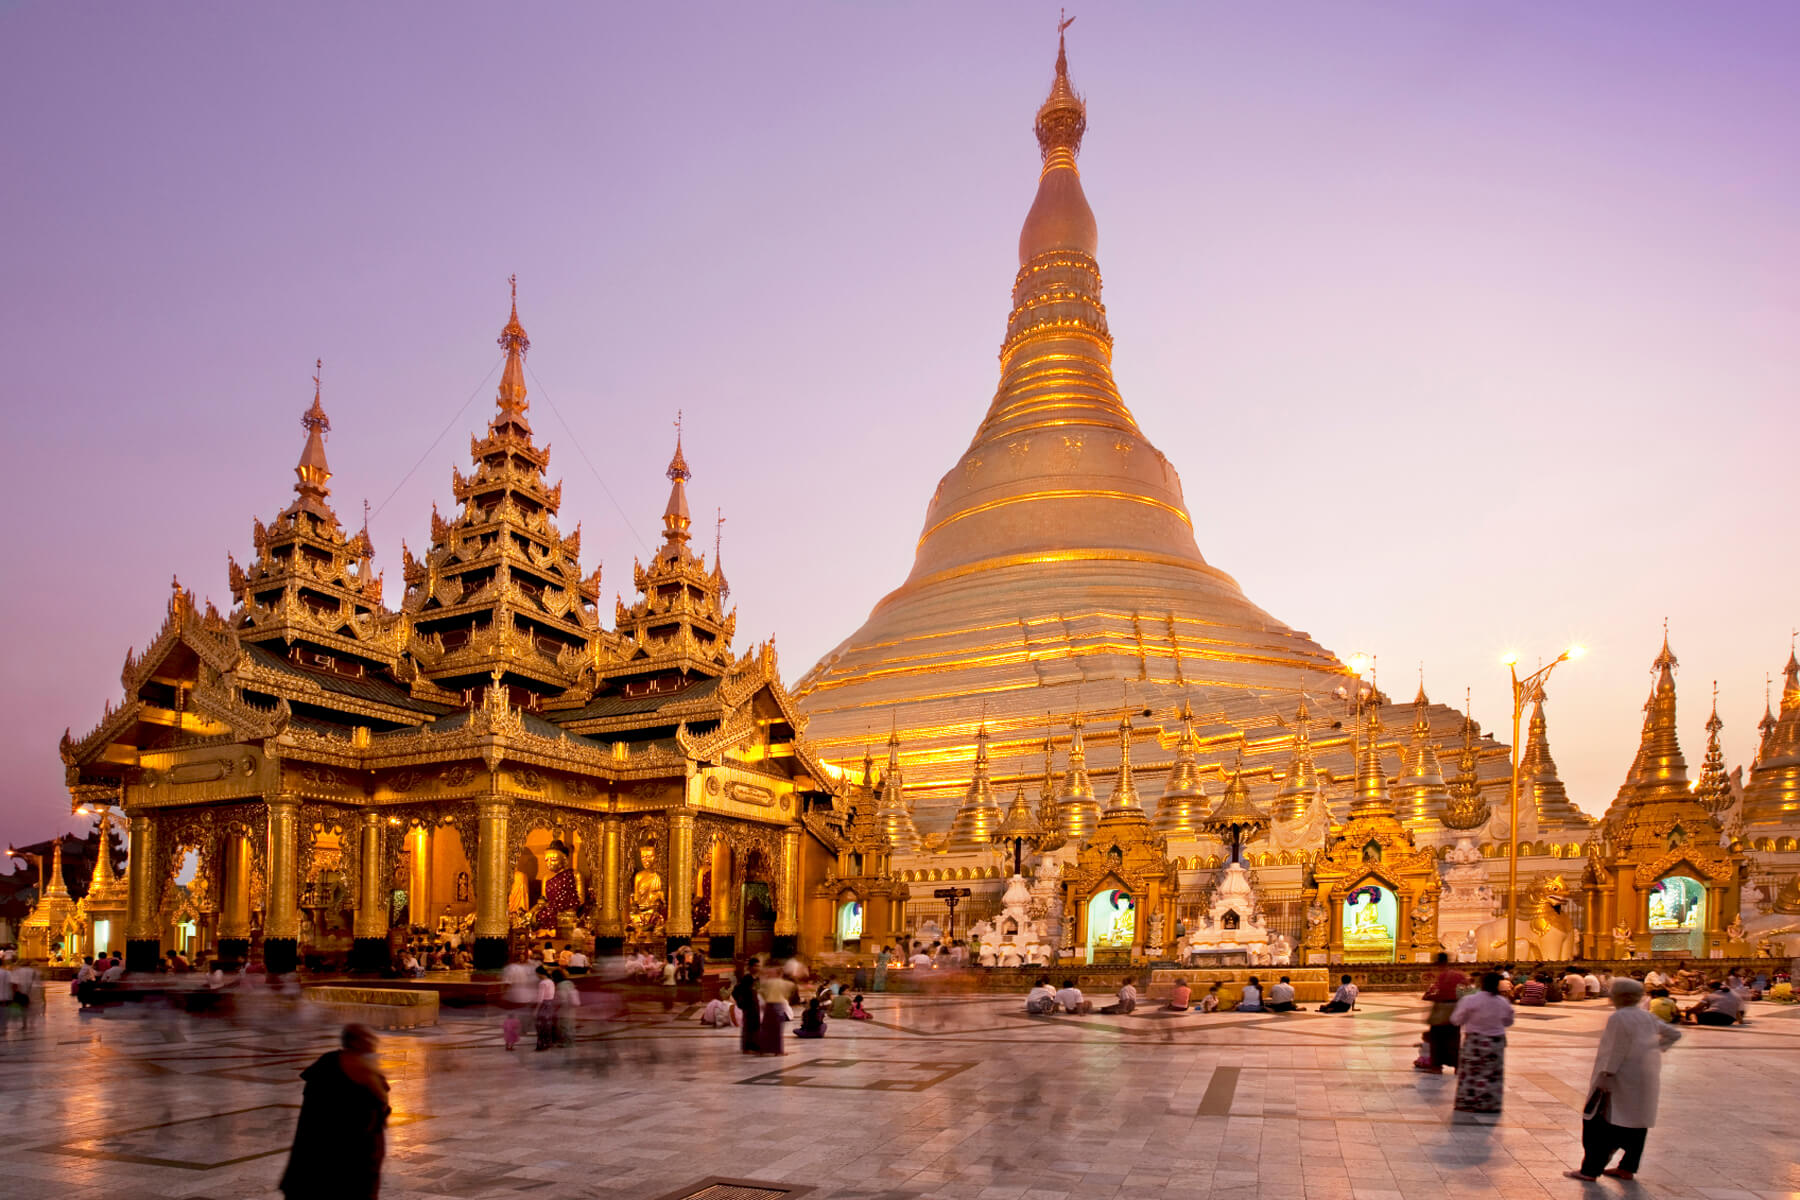 Tour du lịch Yangon Tâm linh 2022/2023 187744